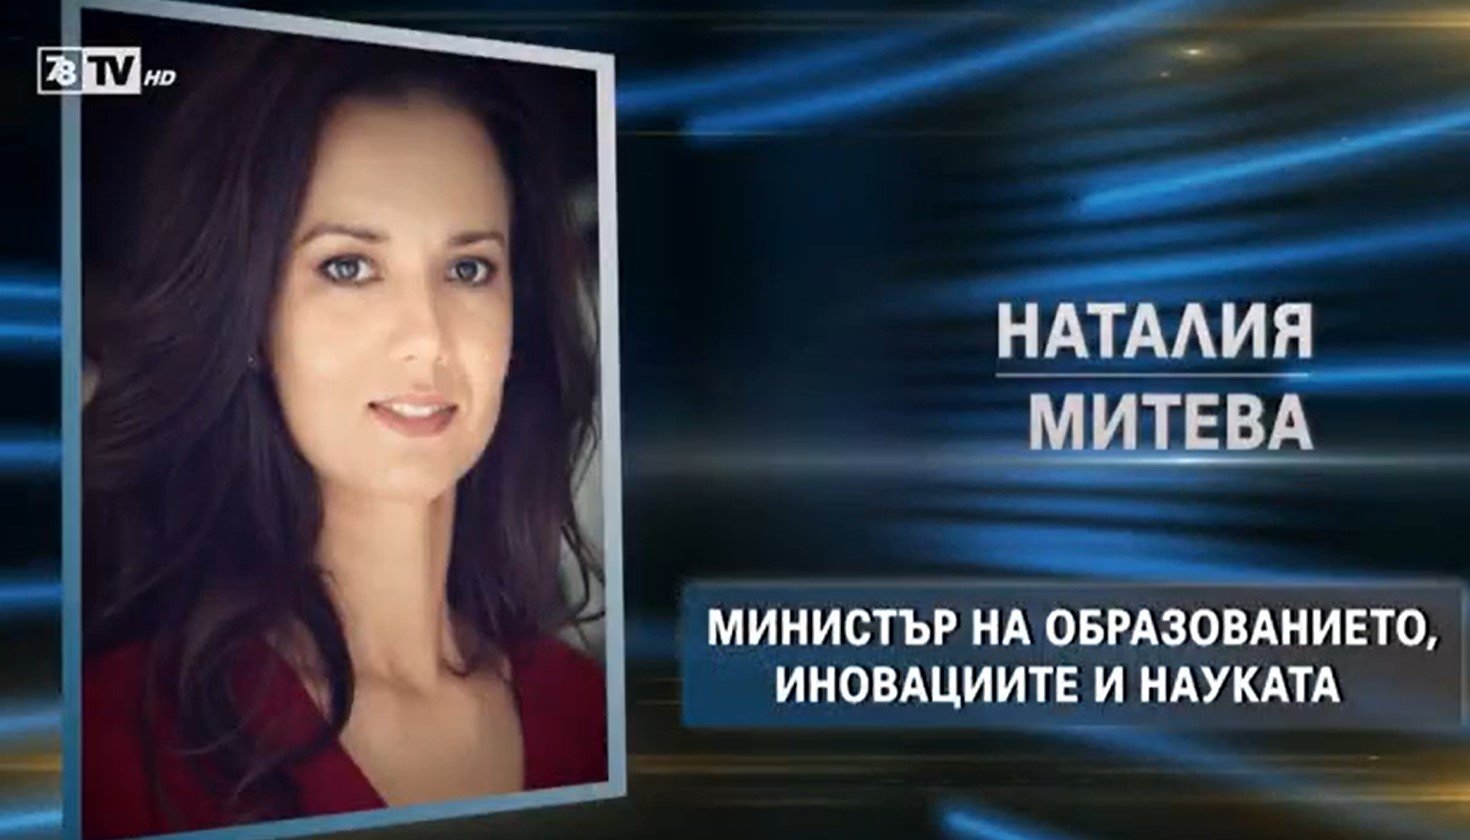 Коя е Наталия Митева номинирана за министър на образованието